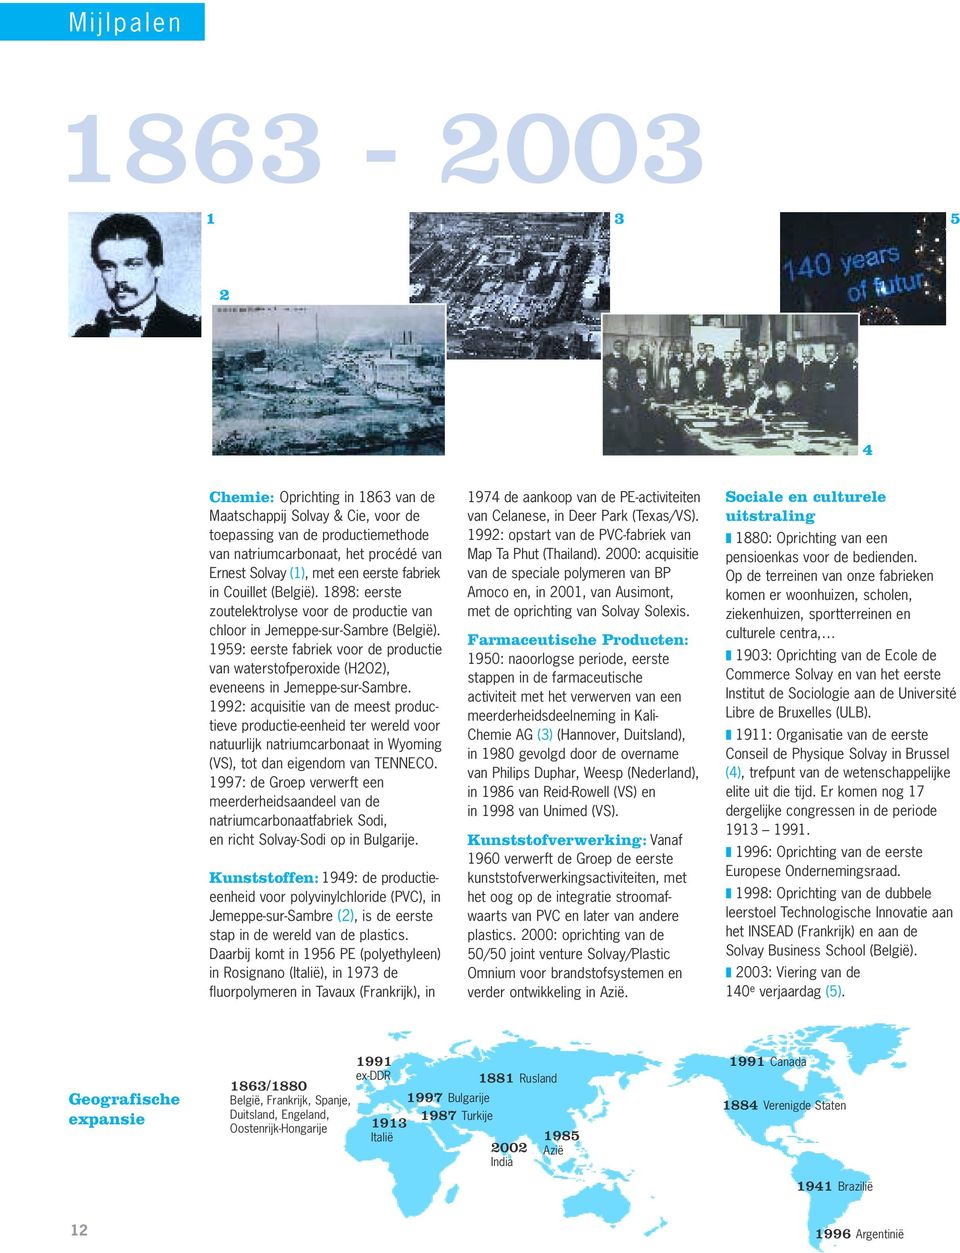 1959: eerste fabriek voor de productie van waterstofperoxide (H2O2), eveneens in Jemeppe-sur-Sambre.